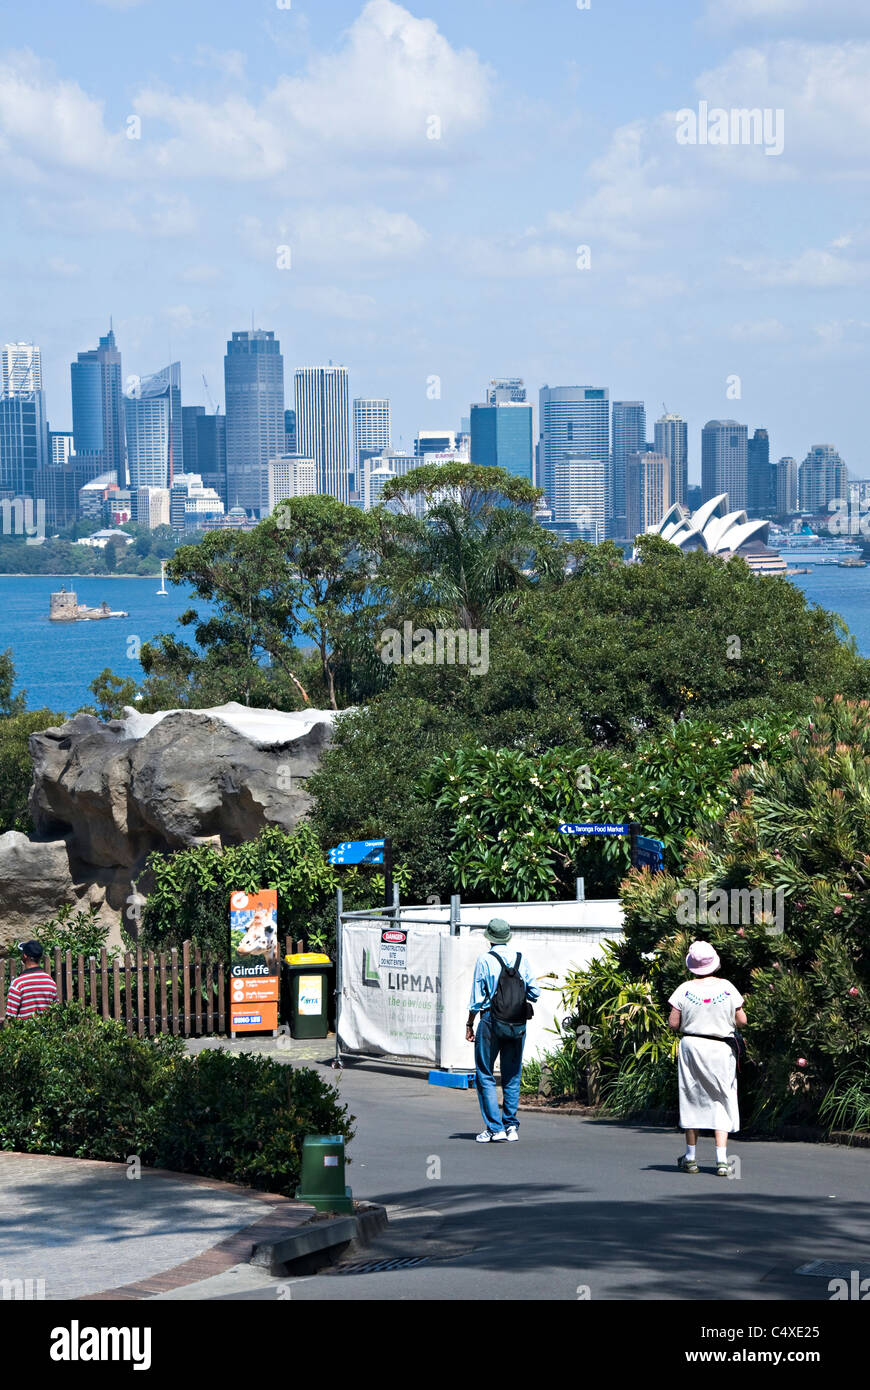 La célèbre ville de Sydney avec l'Opéra et gratte-ciel du centre financier de Taronga Zoo New South Wales Australie Banque D'Images